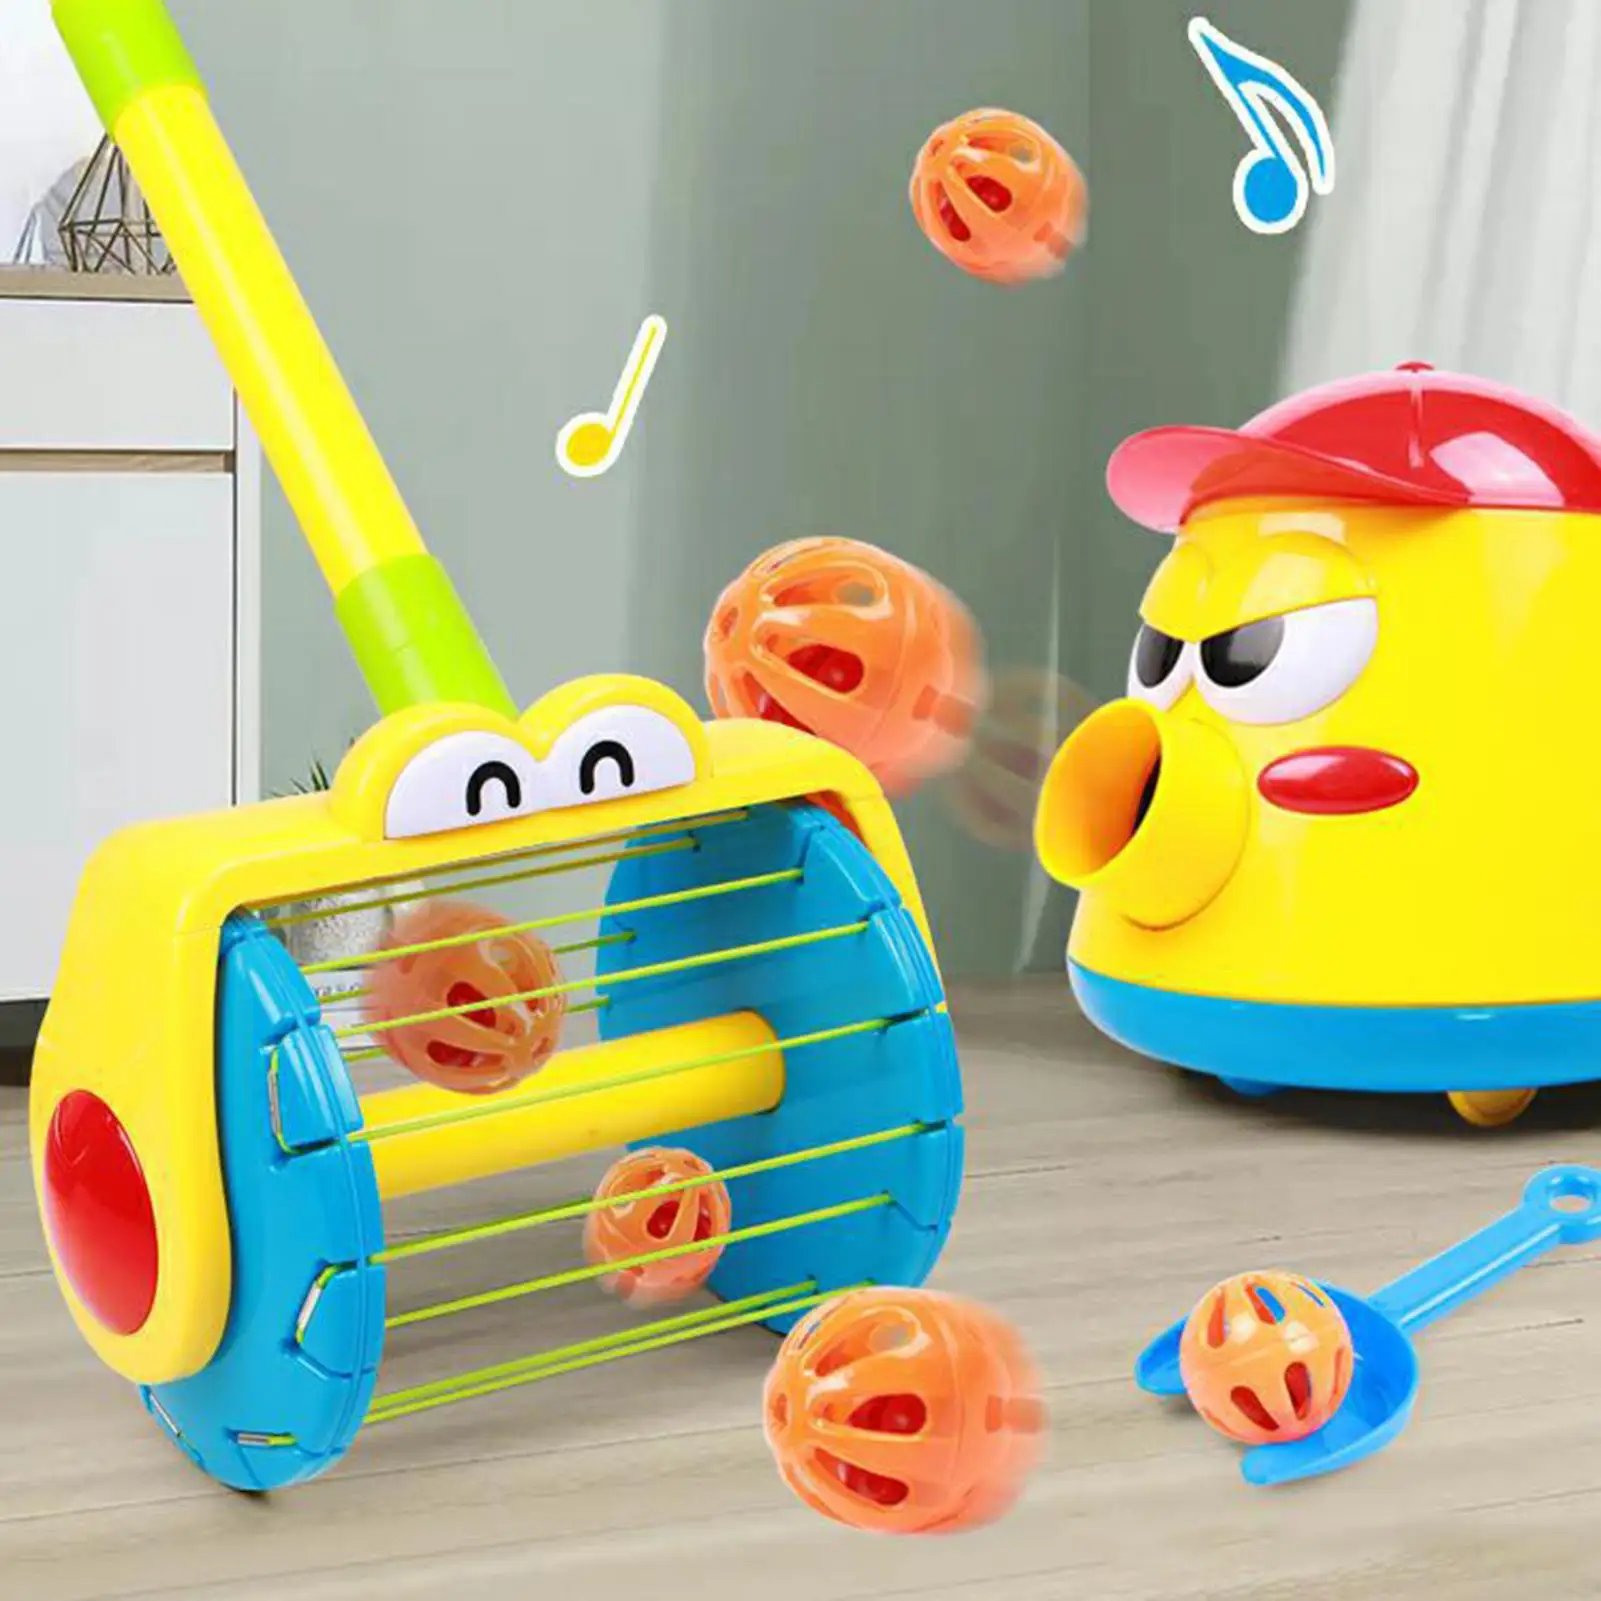 Интерактивная детская игрушка для малышей, Забавный вихревой шар, кукла, ходунки, Рождество и новый год, детские подарки